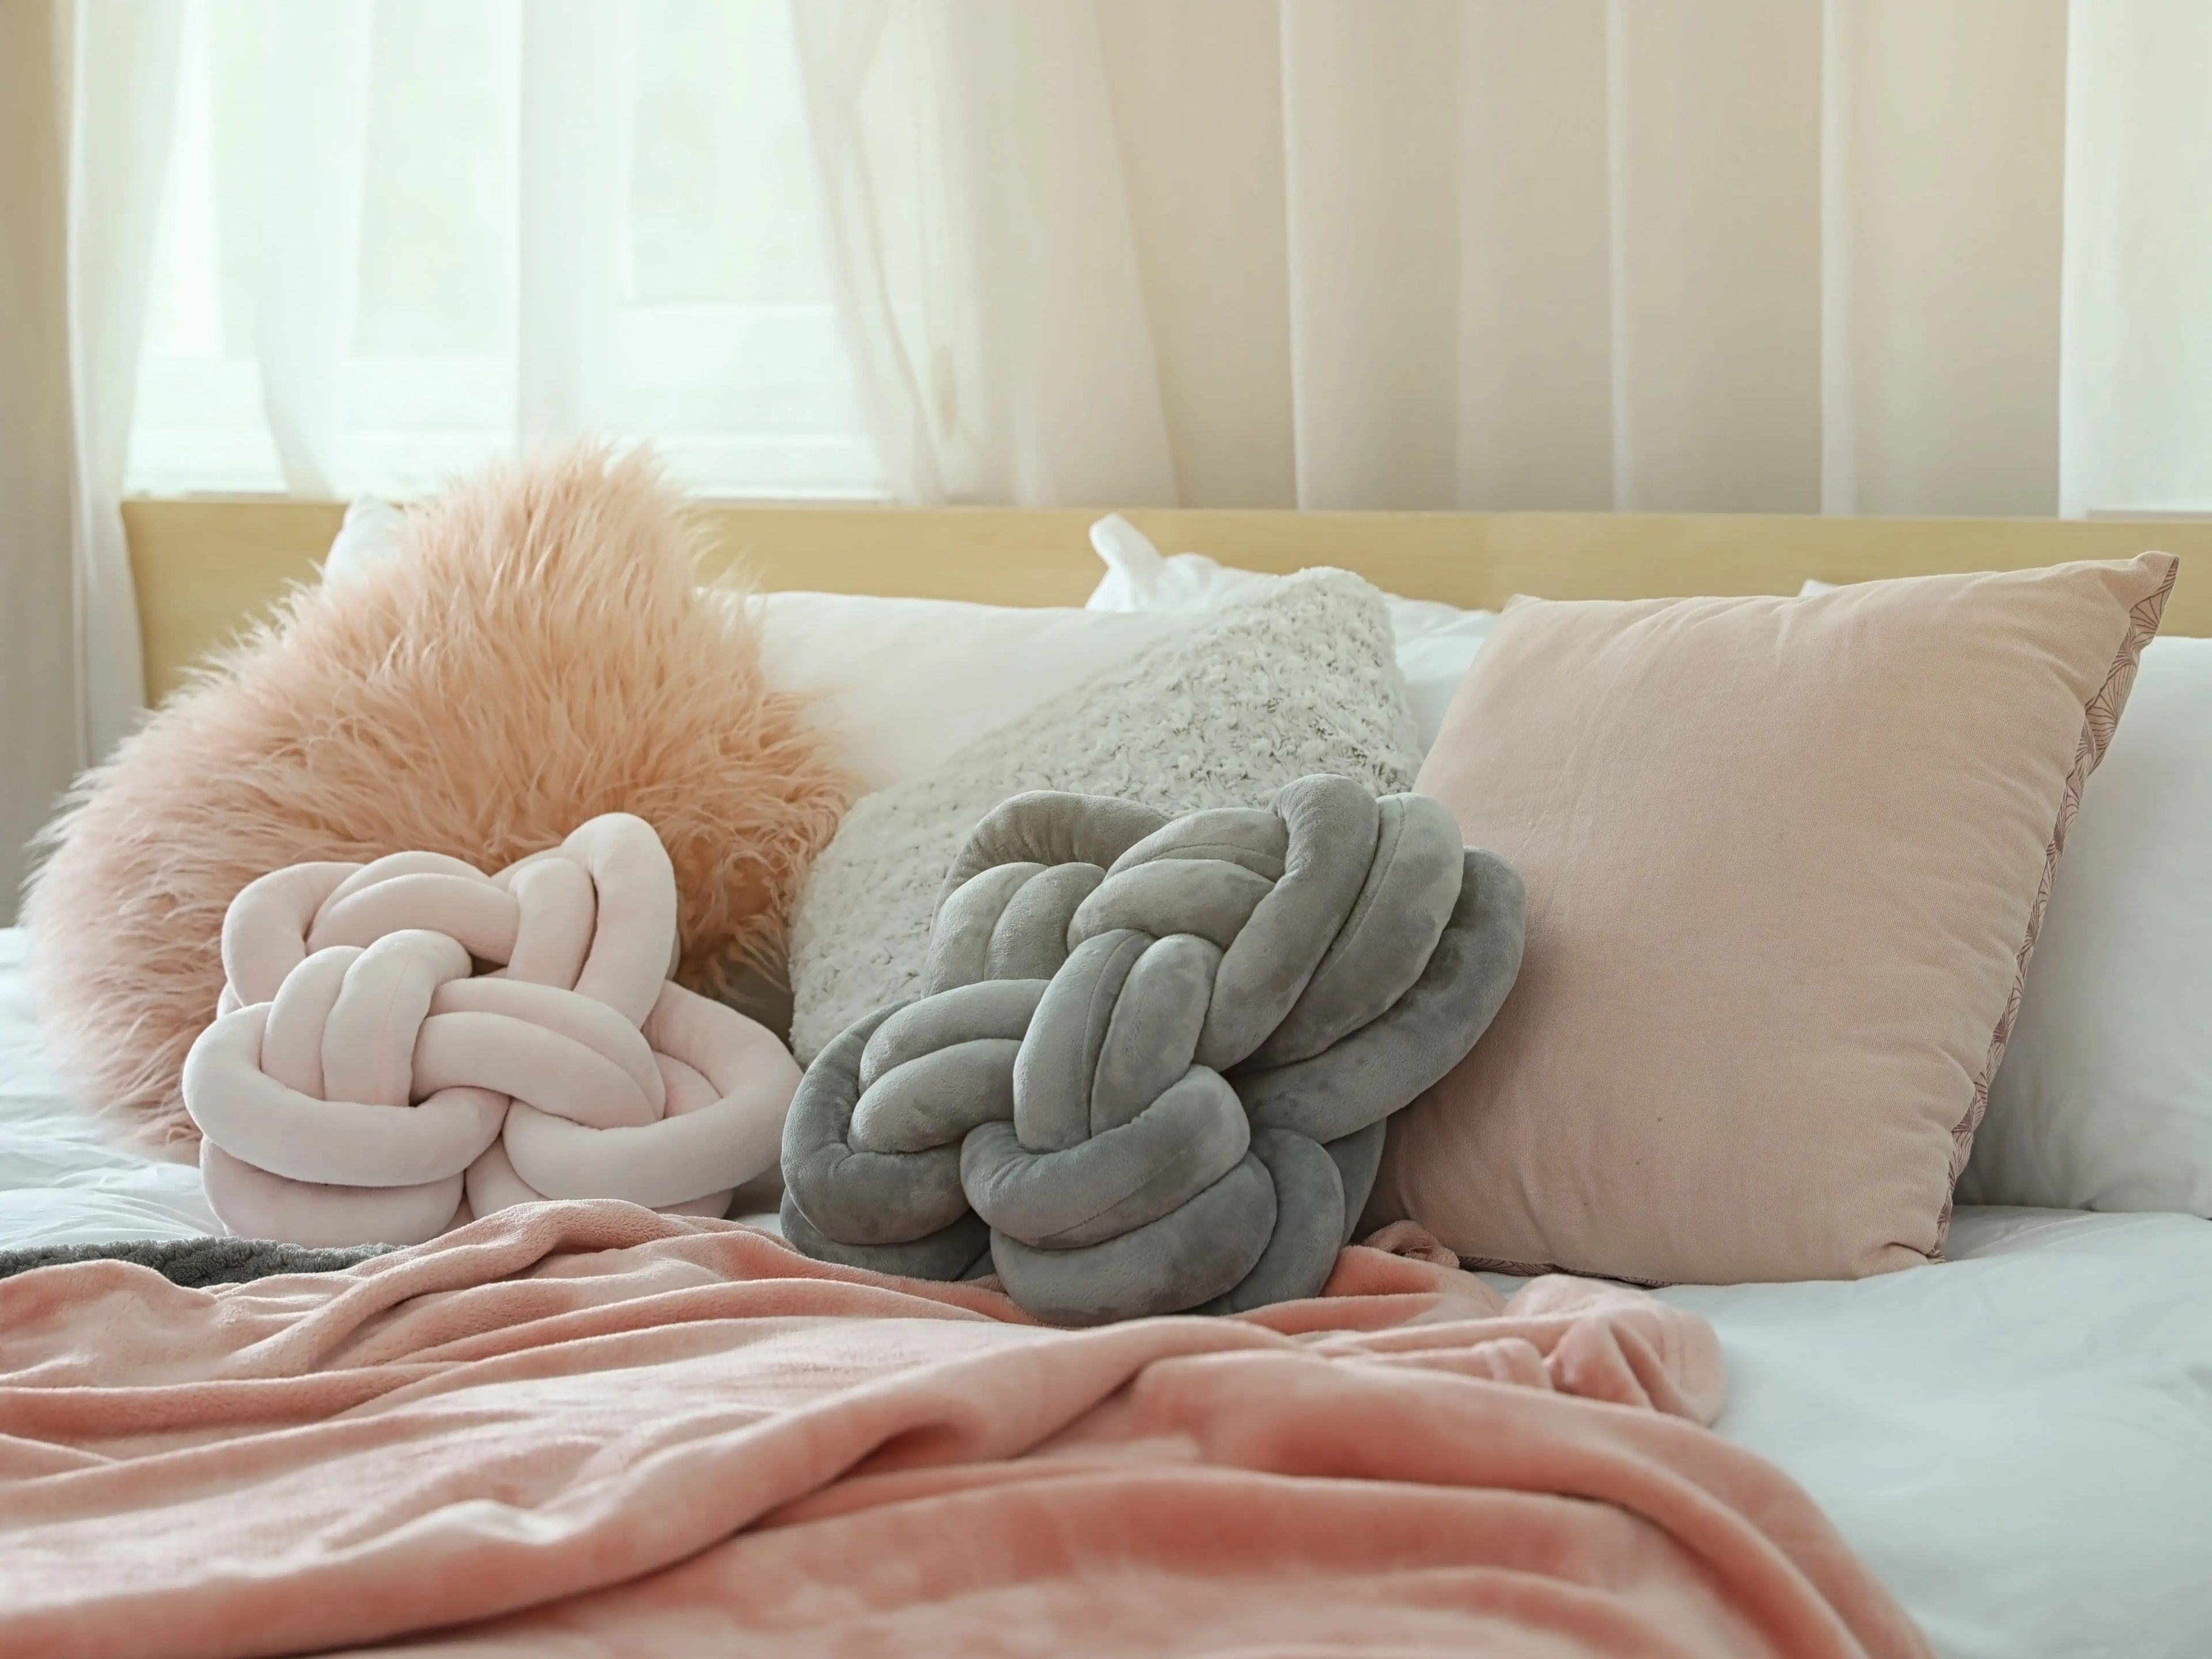 Escoge almohadas de diferentes formas, tamaños y colores.